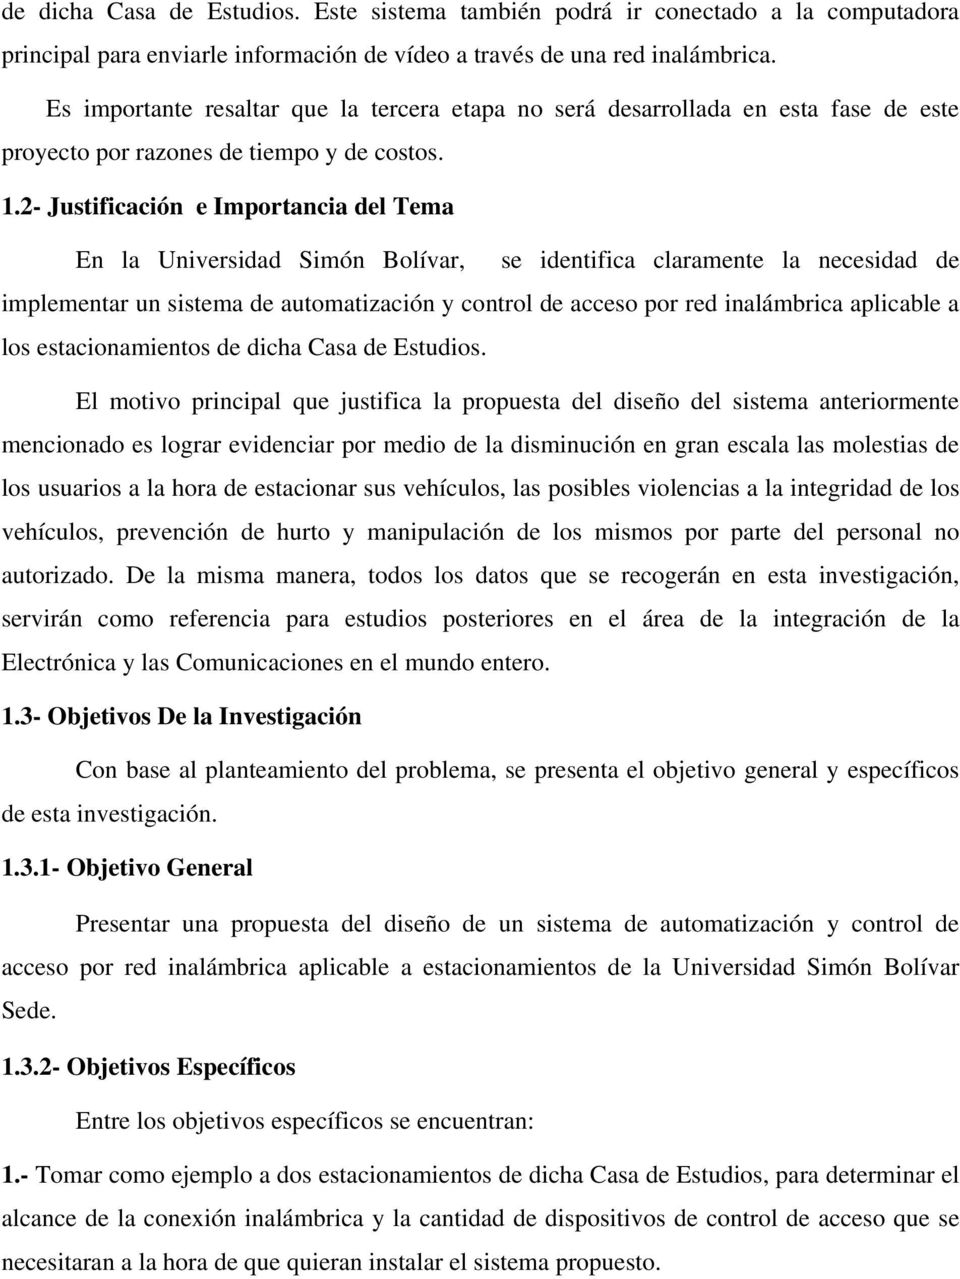 2- Justificación e Importancia del Tema En la Universidad Simón Bolívar, se identifica claramente la necesidad de implementar un sistema de automatización y control de acceso por red inalámbrica